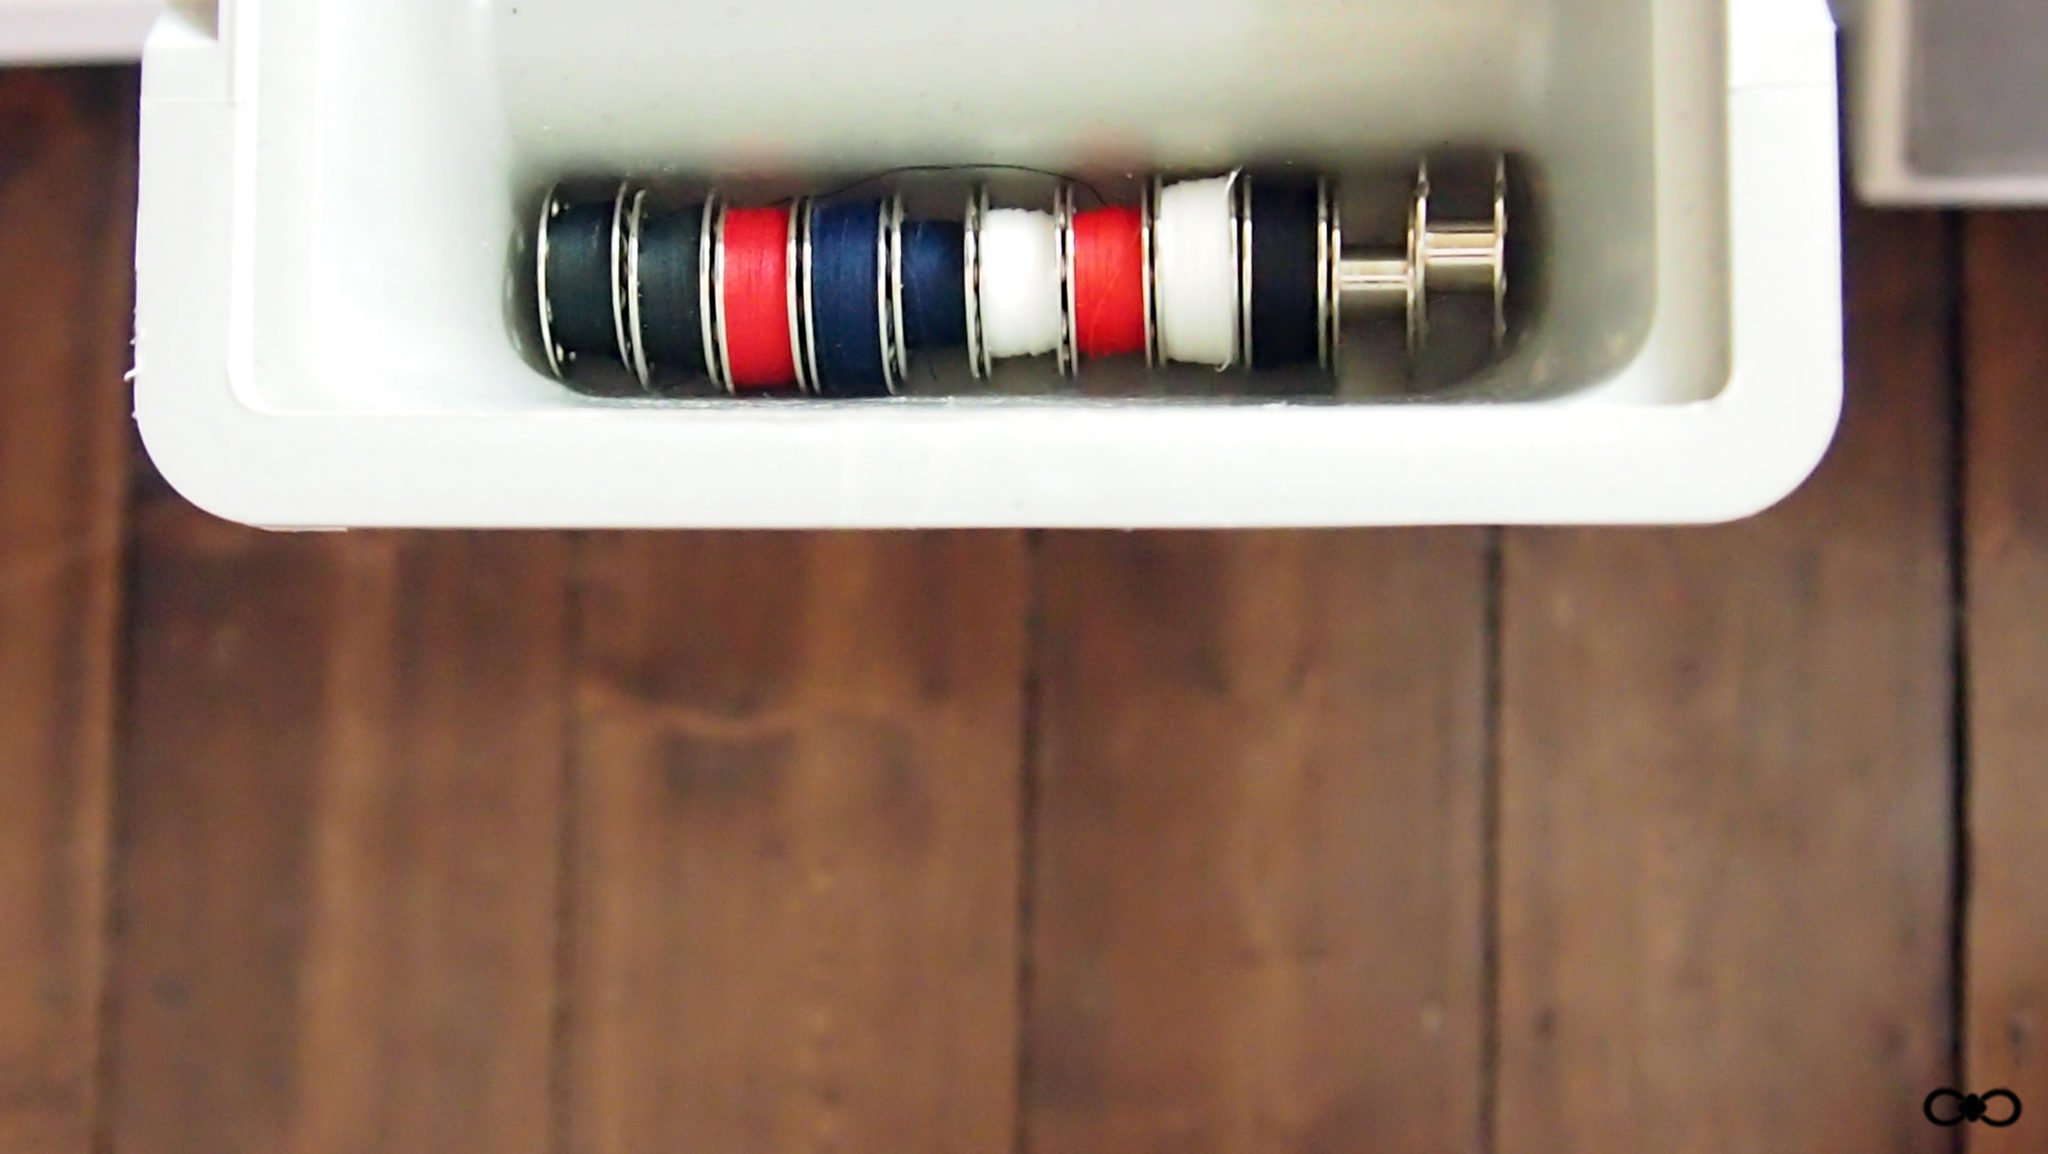 canette-fils-machine-a-coudre-bleu-rouge-blanc-noir-preparation-organisation-couture-rangement